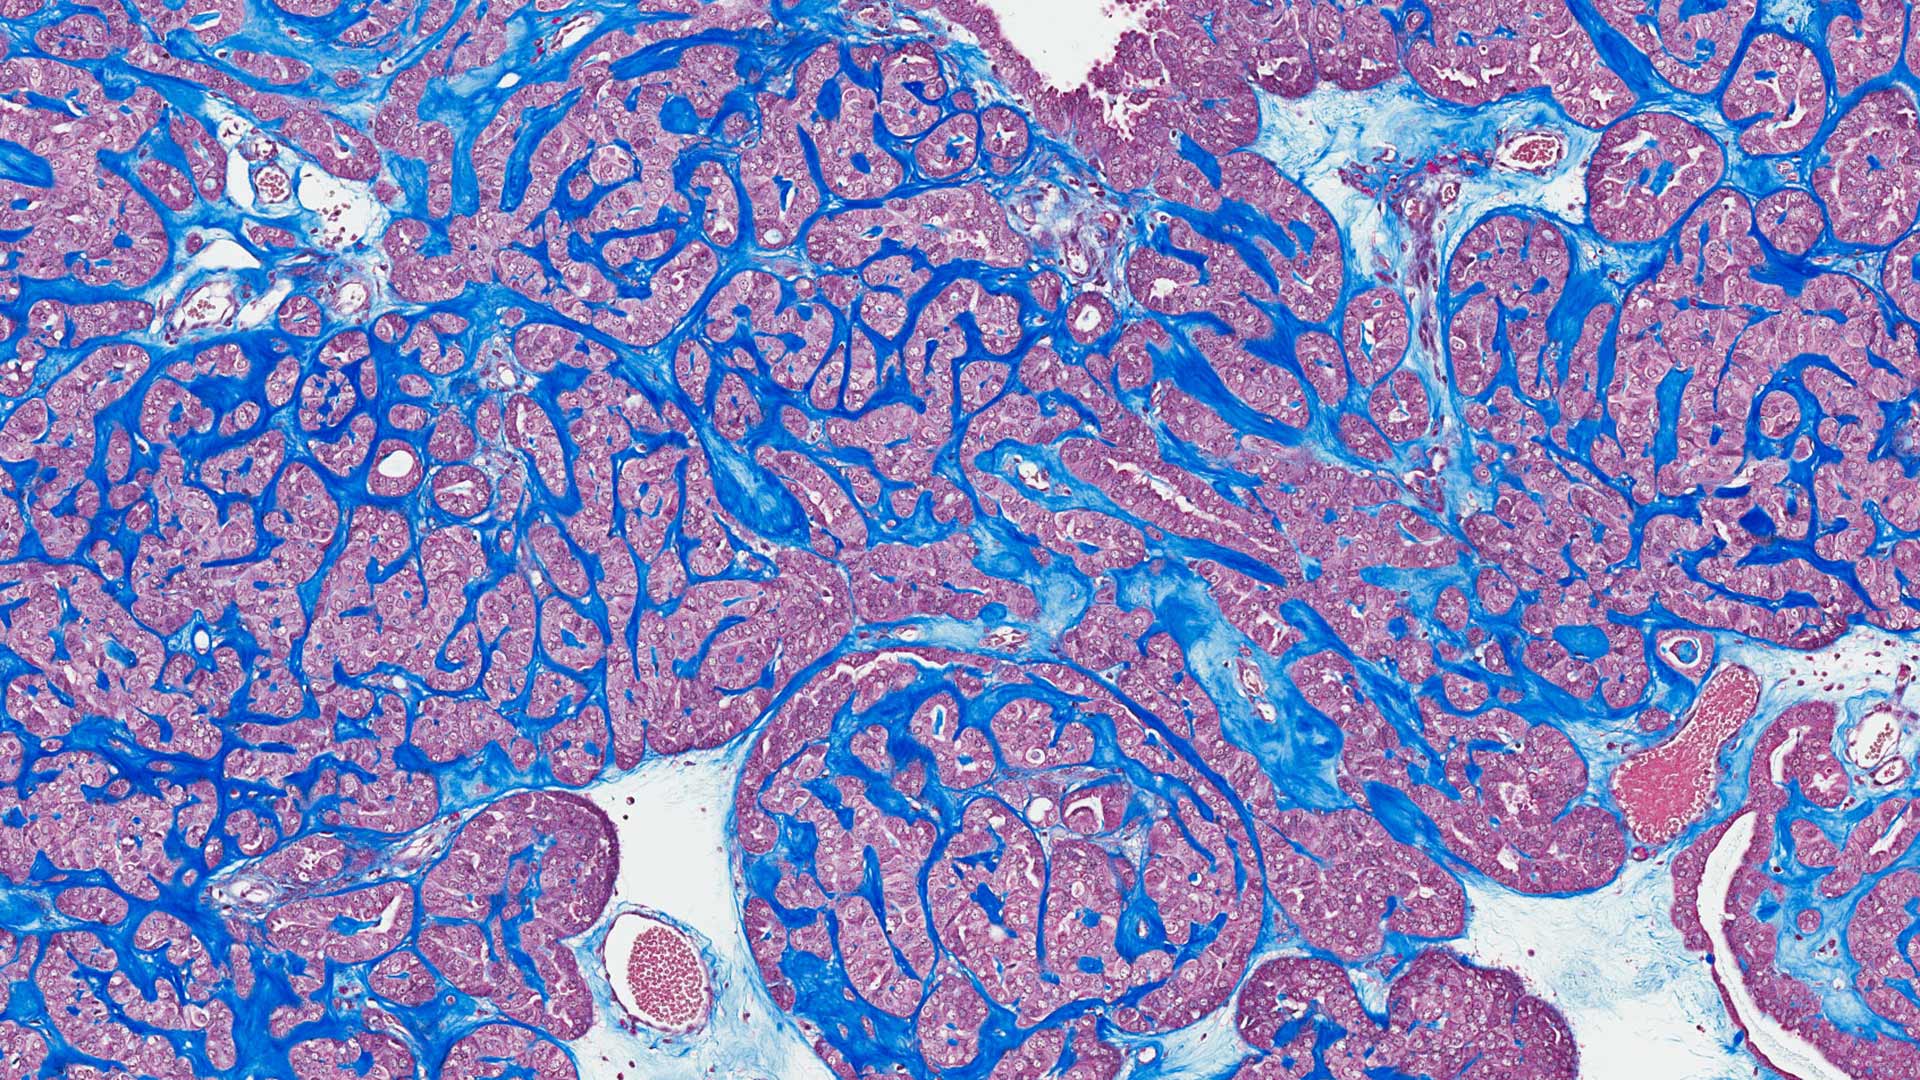 Cancer tissue